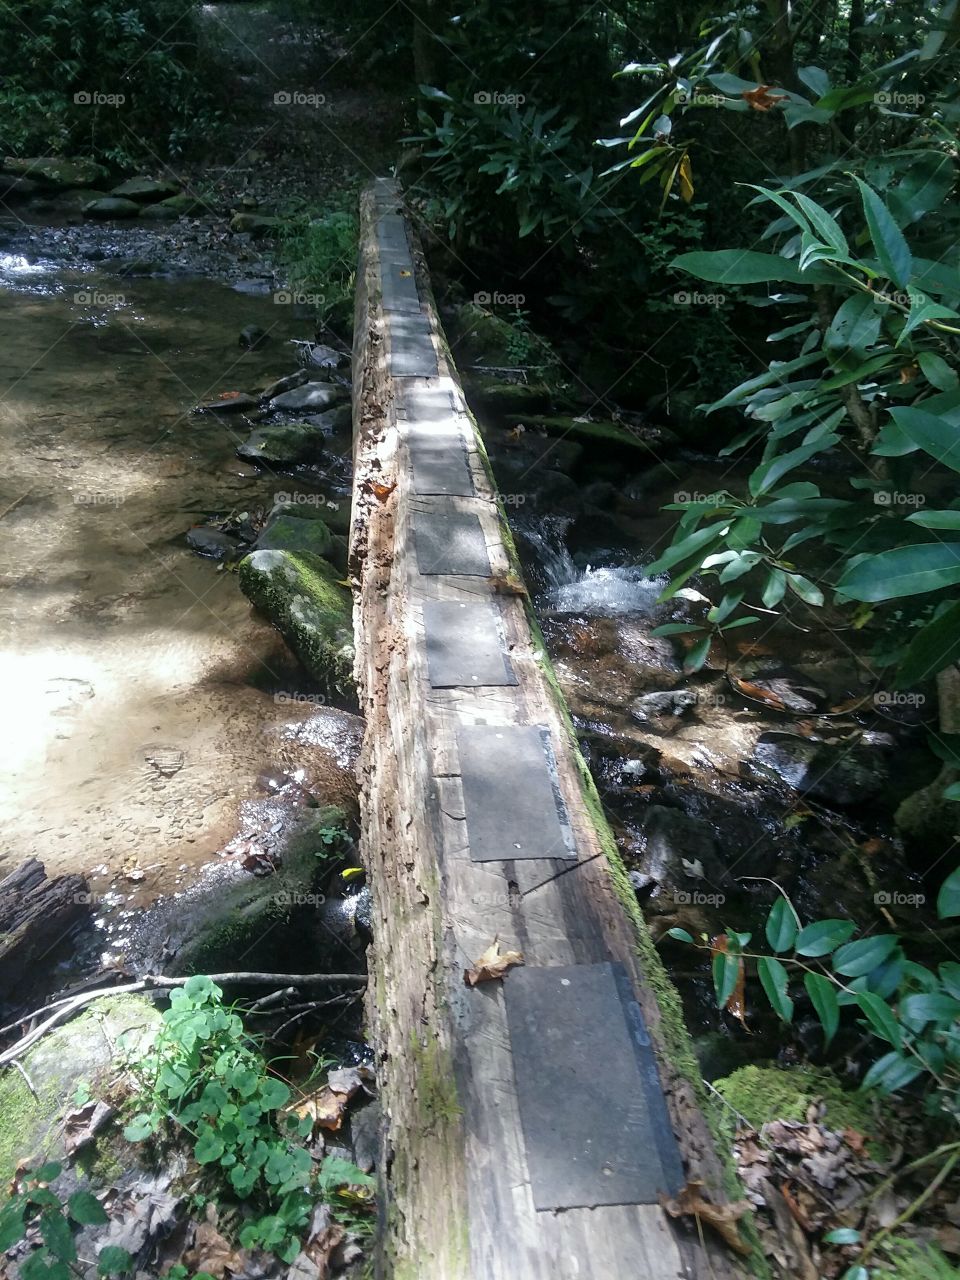 Footbridge over stream